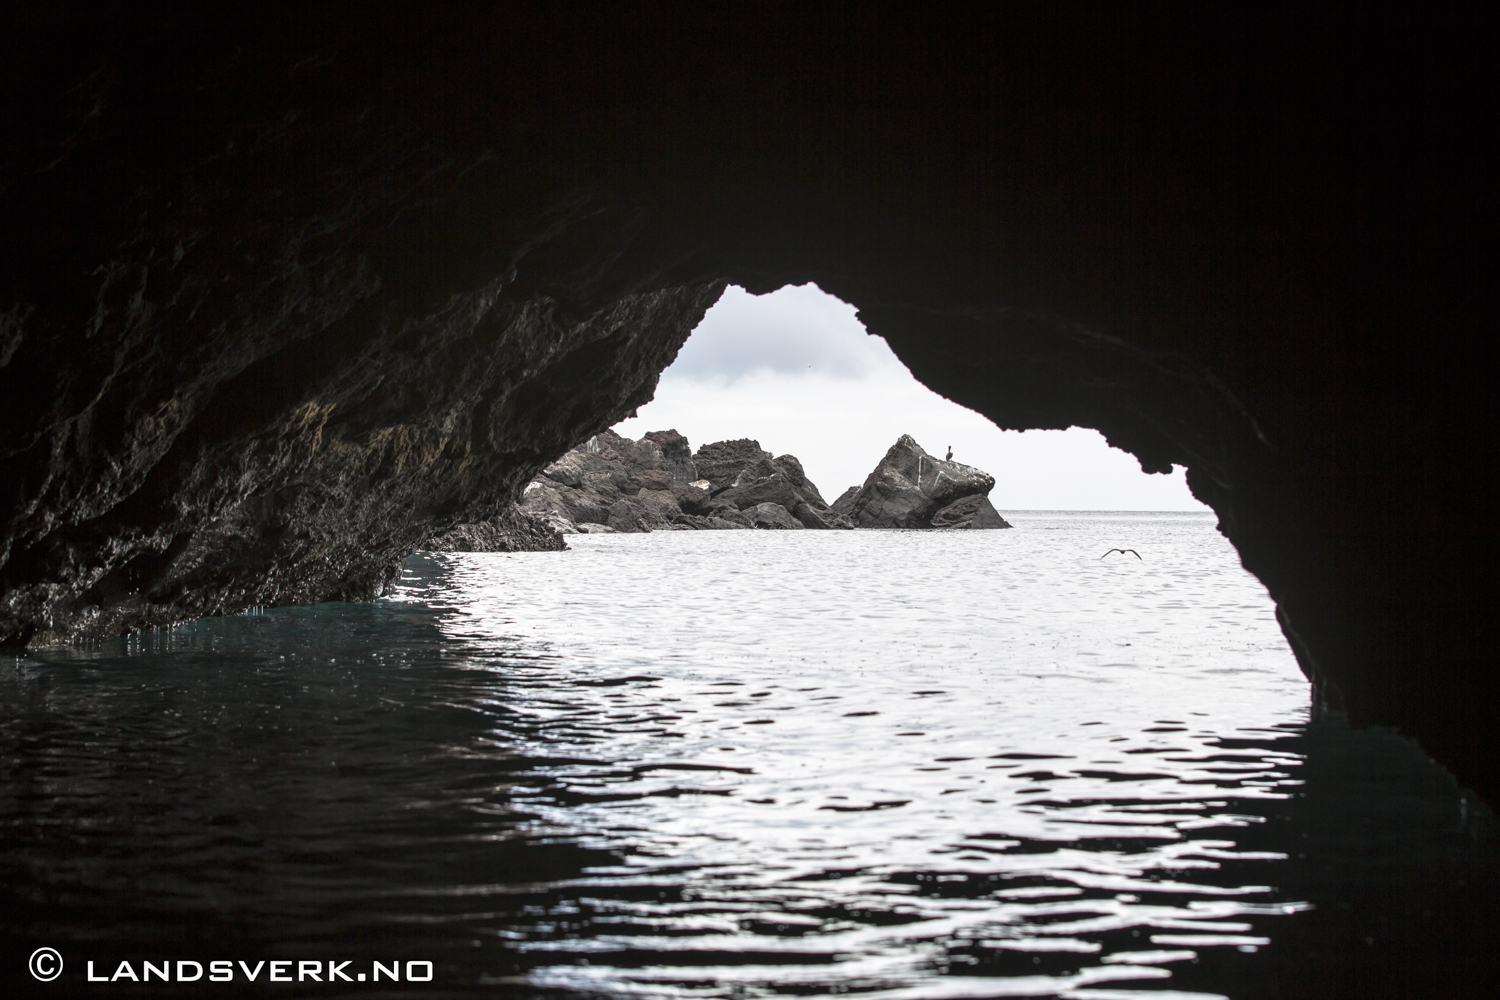 Bucaneer Cove, Isla Santiago, Galapagos. 

(Canon EOS 5D Mark III / Canon EF 70-200mm f/2.8 L IS II USM)